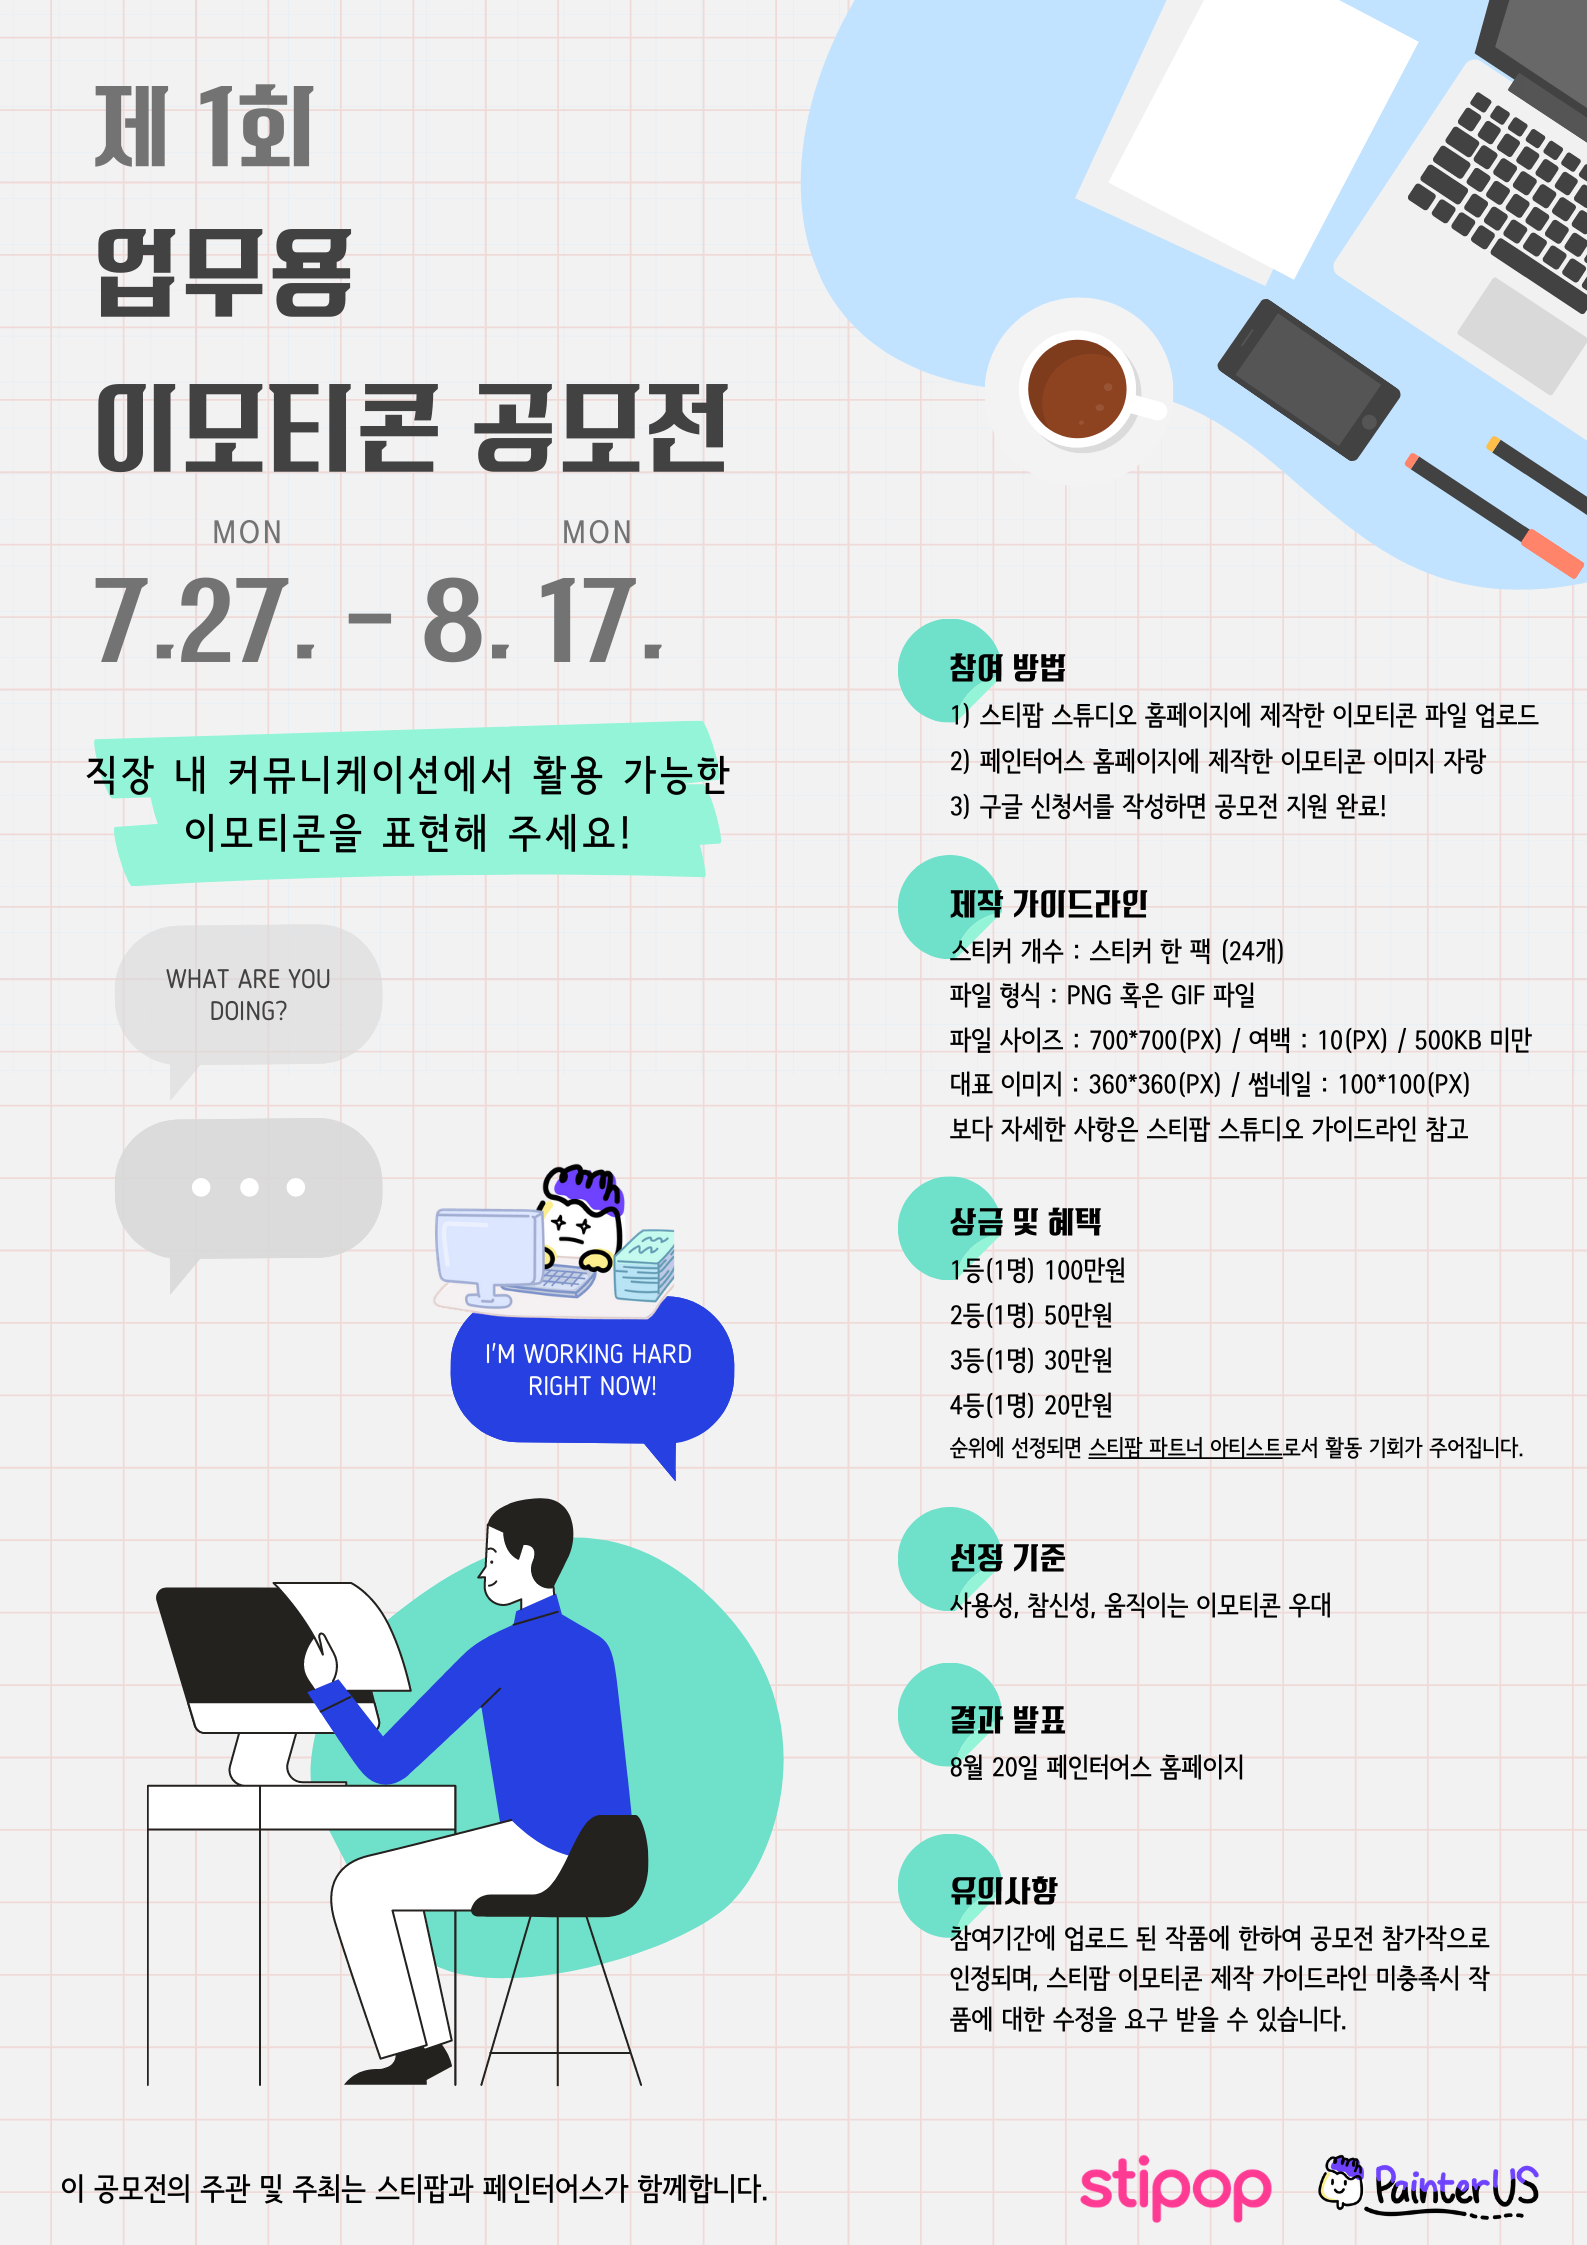 스티팝, 페인터어스 제1회 업무용 이모티콘 공모전 개최